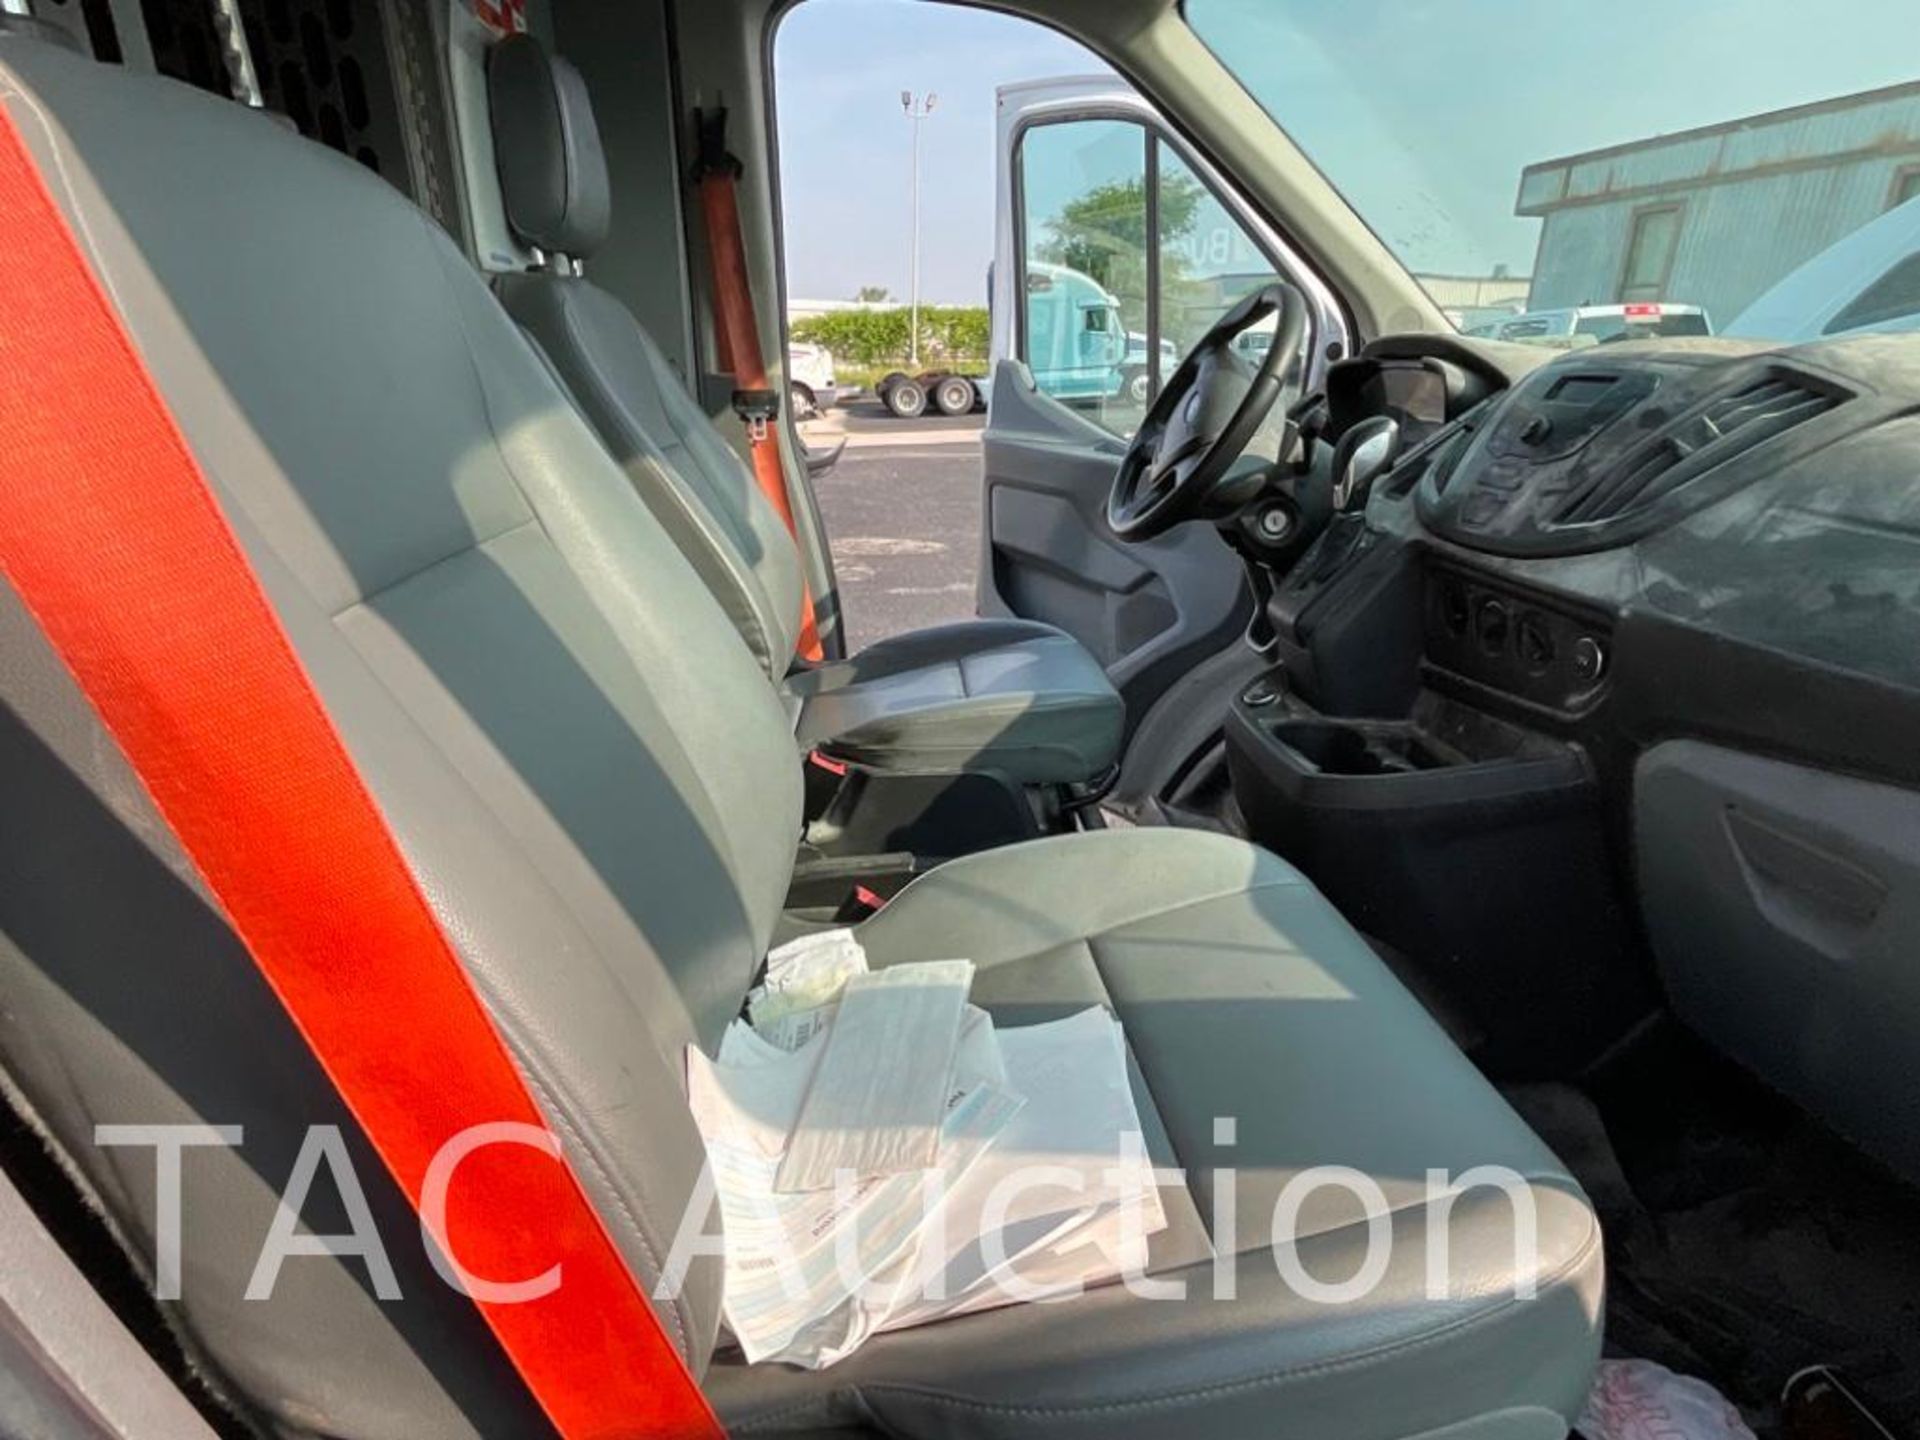 2017 Ford Transit 150 Cargo Van - Image 18 of 49